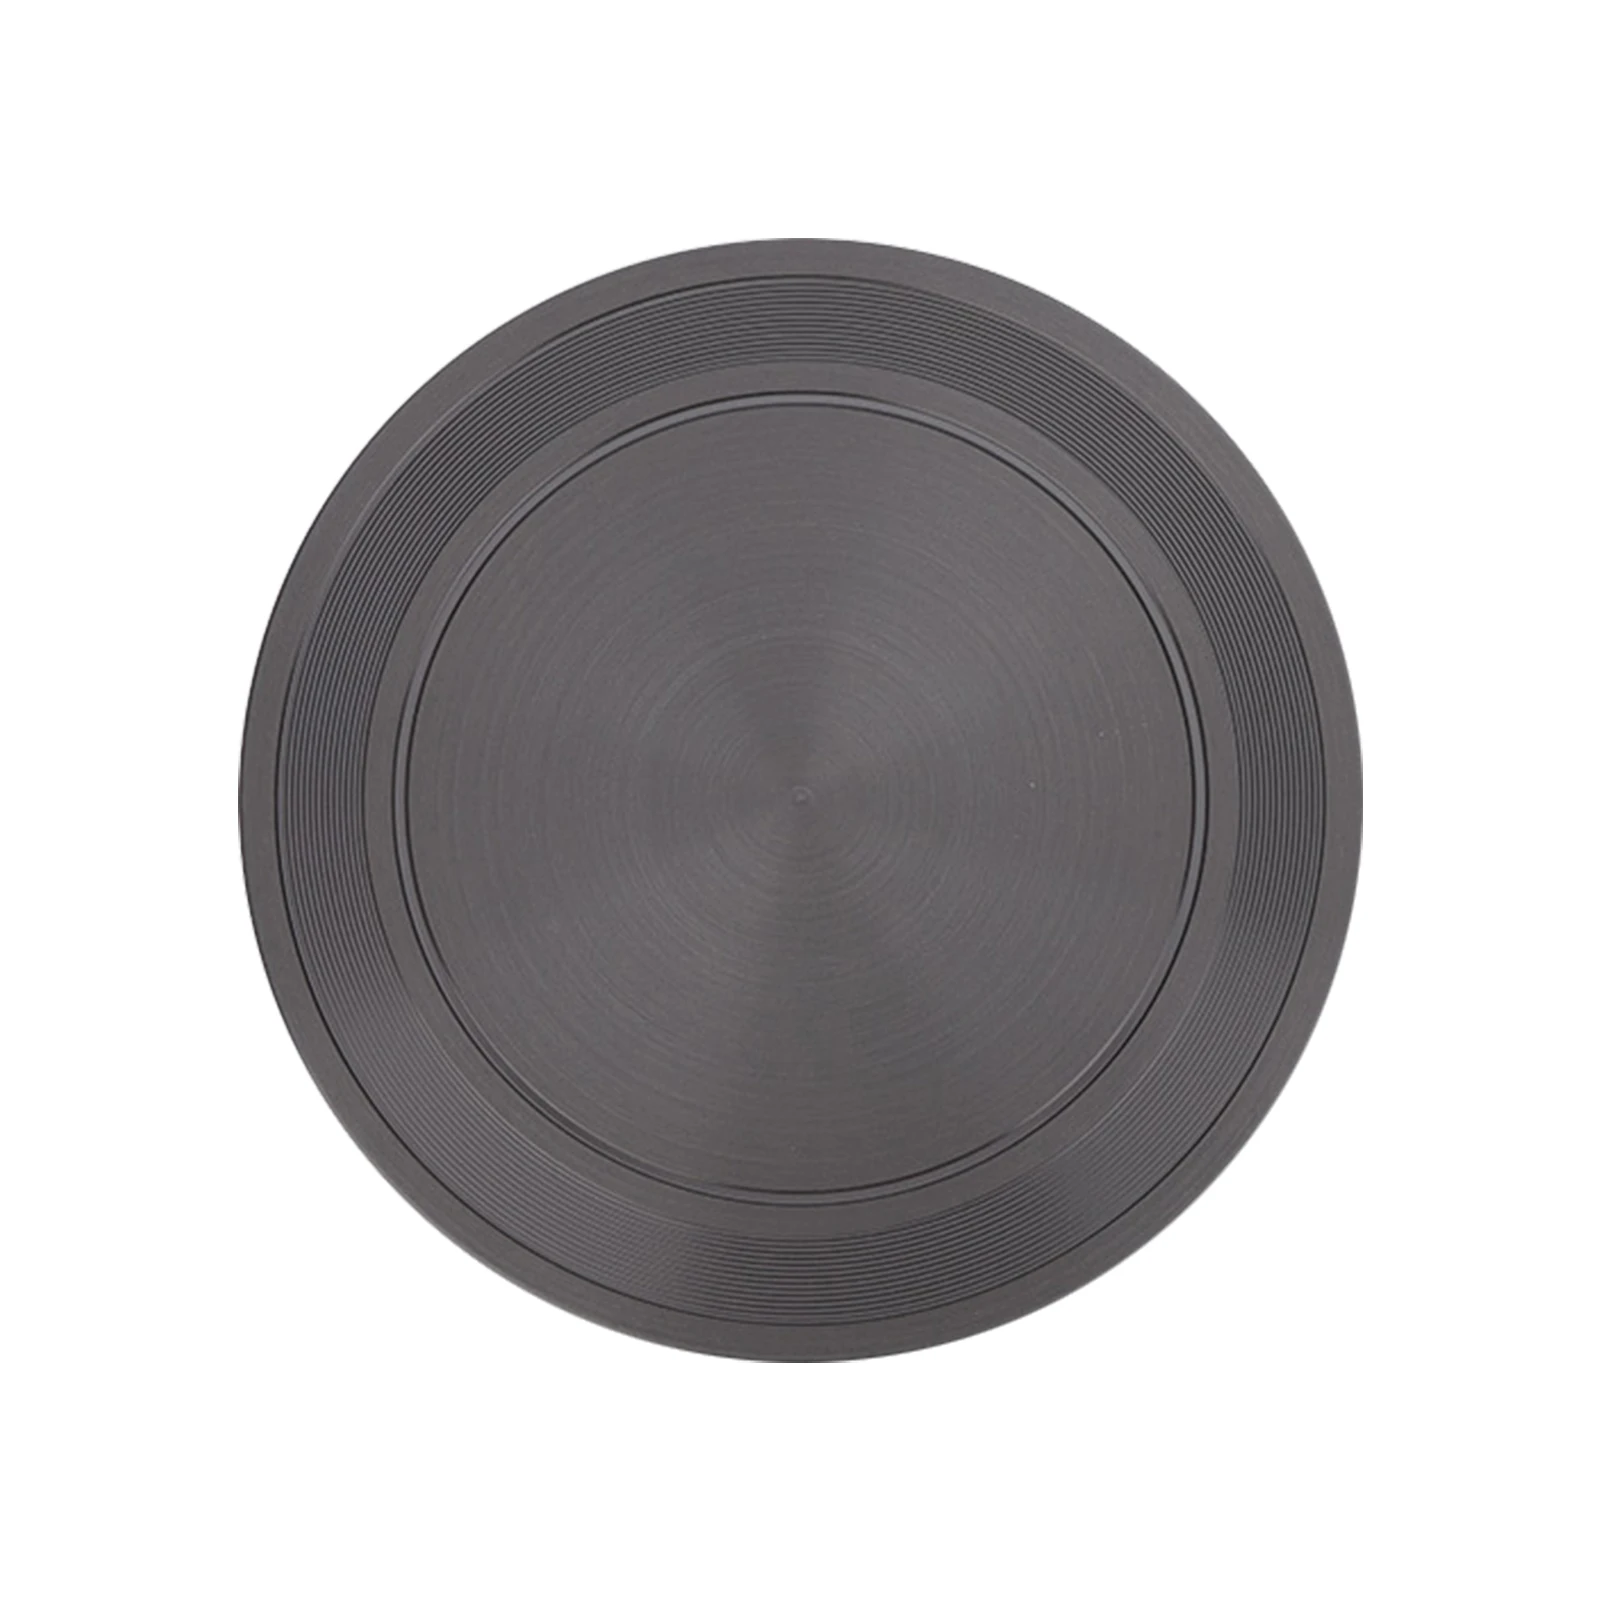 

Кухонная посуда для варочной панели 20 см, нескользящая Современная круглая тарелка для разрозки, тепловой диффузор, энергосберегающий горшок, защита, Легкая очистка, для газовой плиты